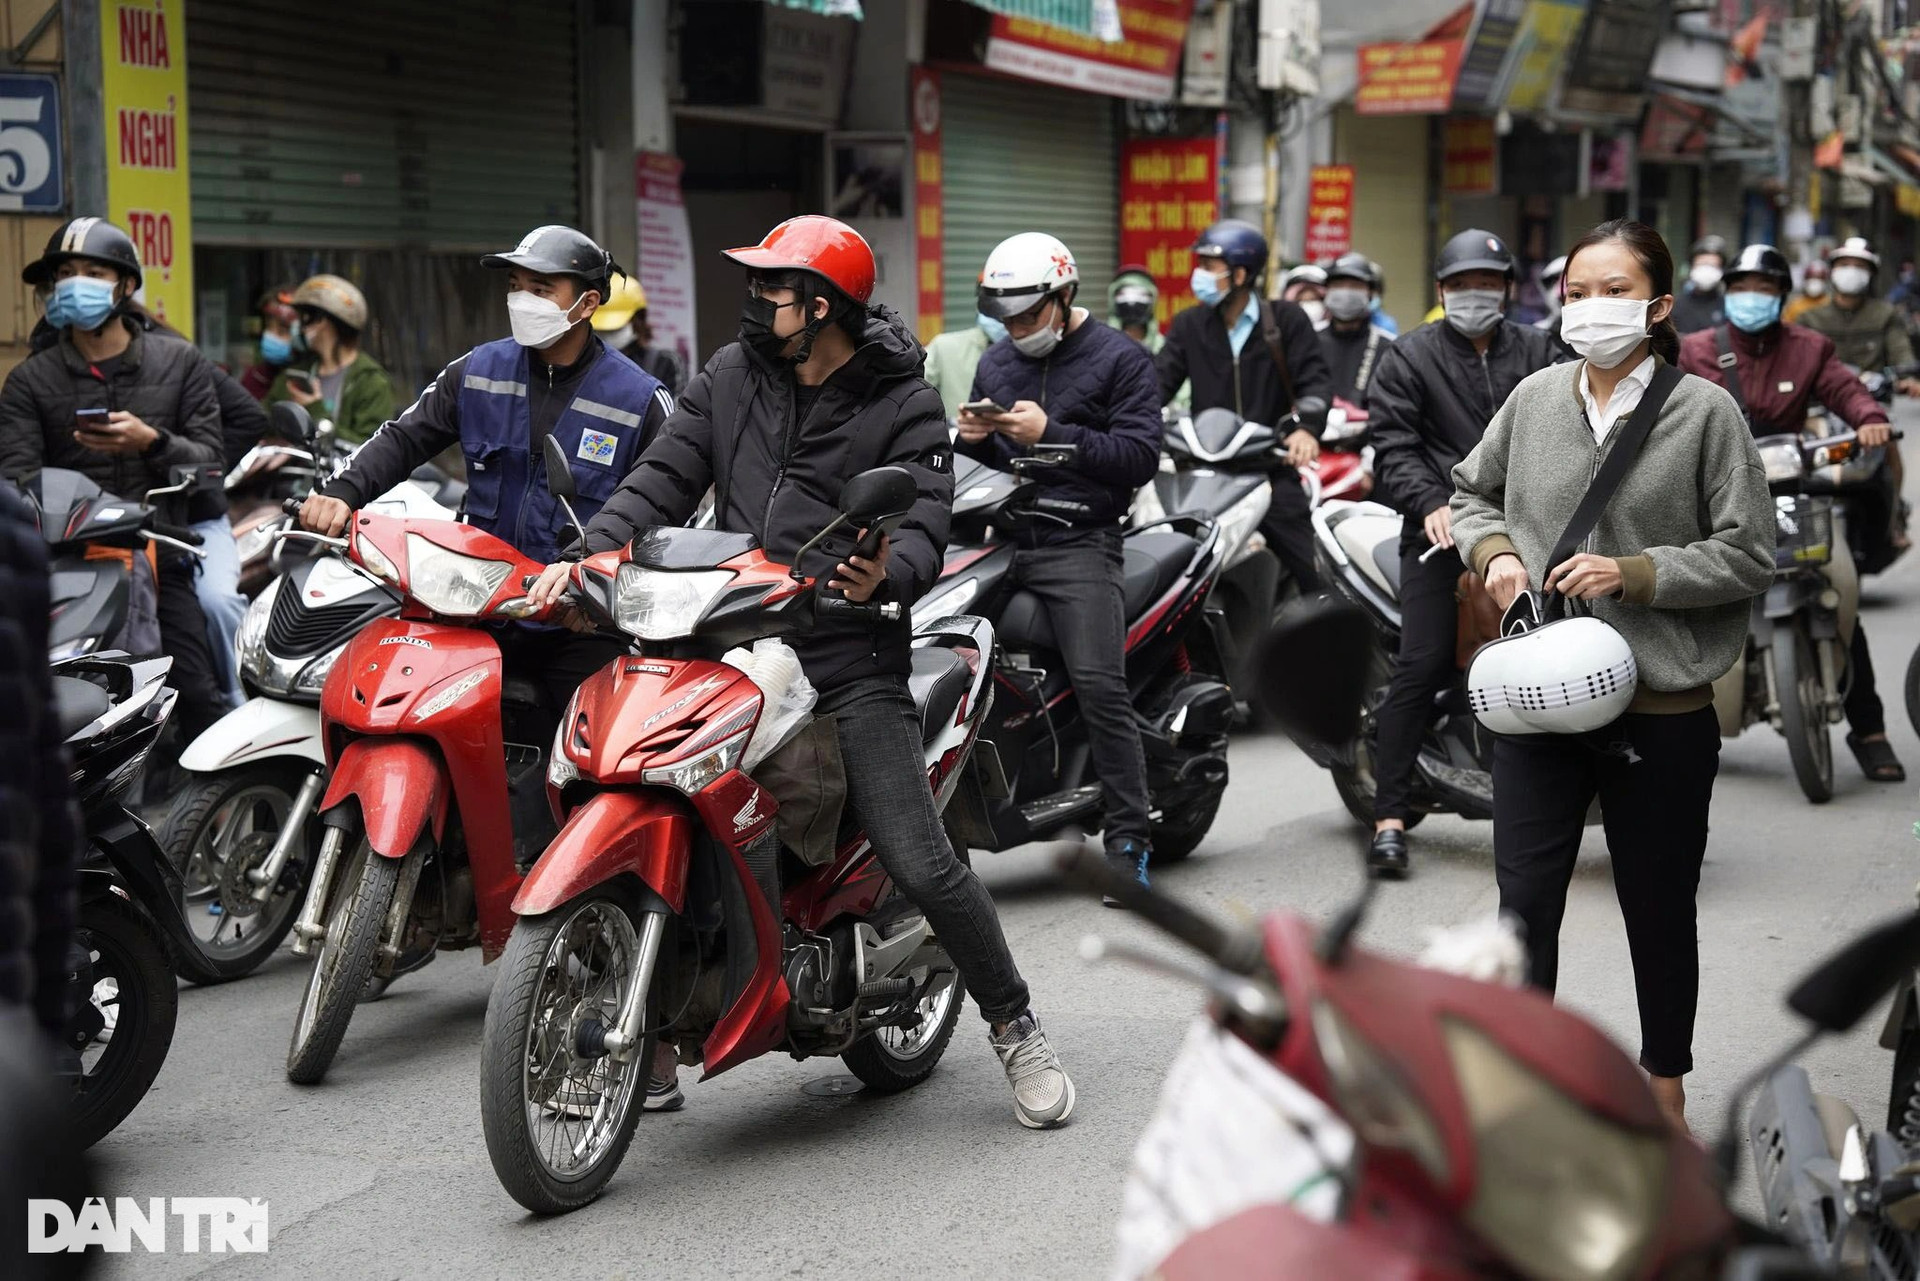 Hà Nội: Đông nghịt người quét QR Code tại ổ dịch Phú Đô - 8